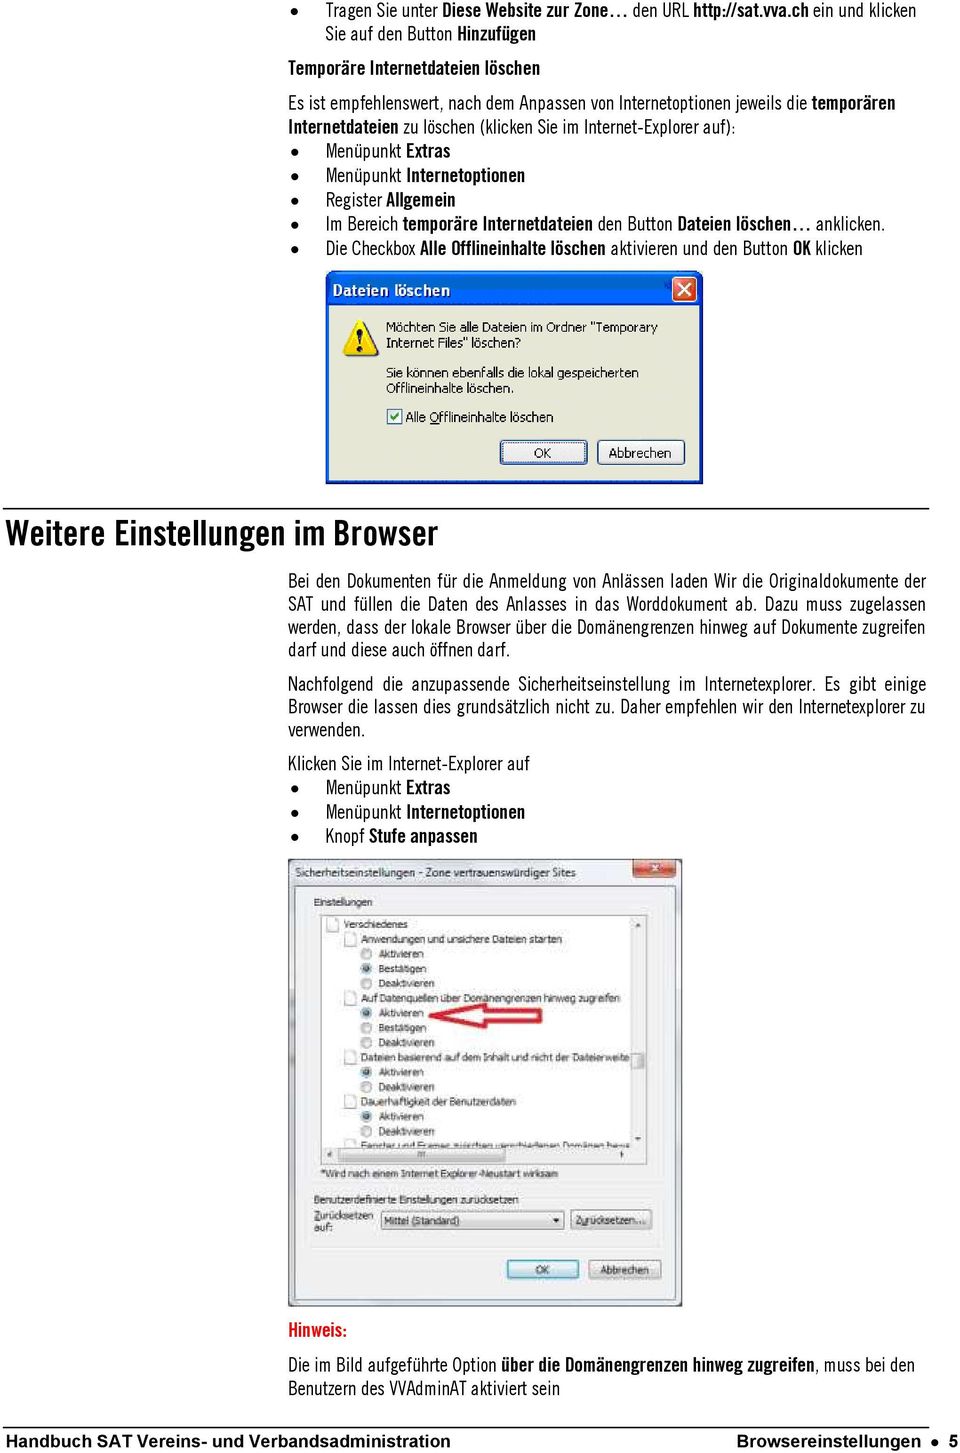 (klicken Sie im Internet-Explorer auf): Menüpunkt Extras Menüpunkt Internetoptionen Register Allgemein Im Bereich temporäre Internetdateien den Button Dateien löschen anklicken.